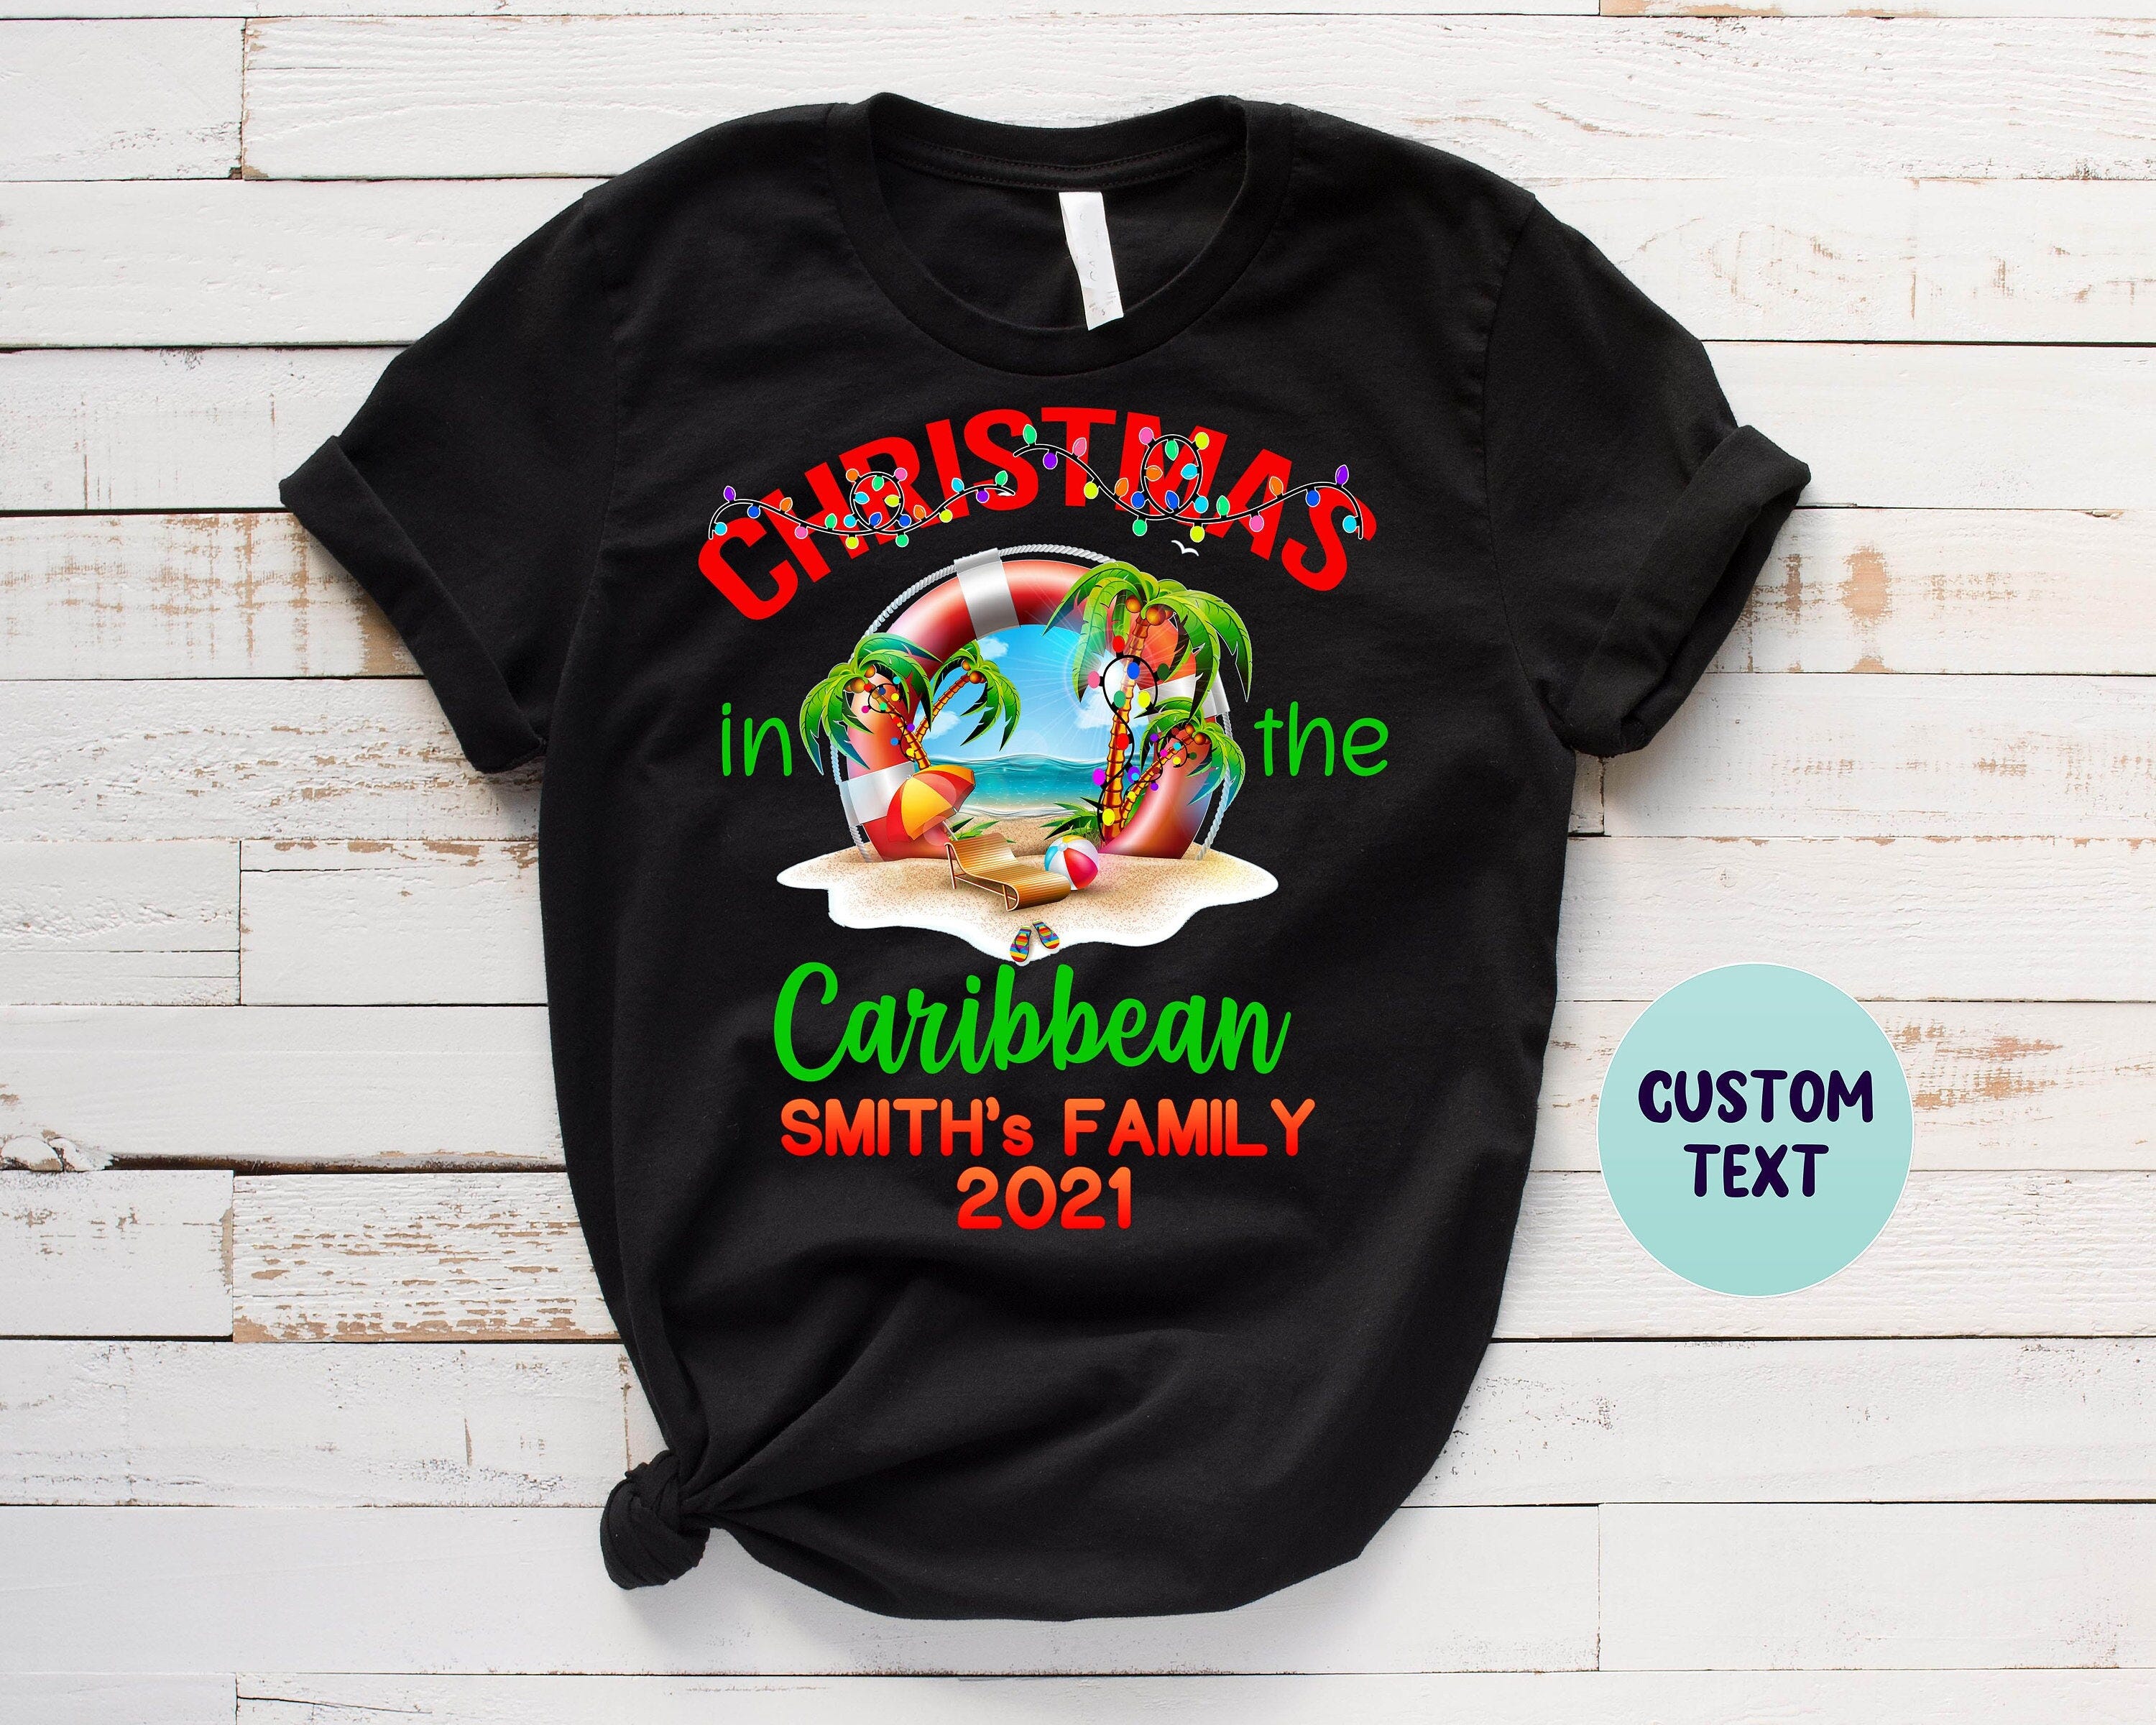 Christmas Cruise, Christmas Shirt, Cruise Shirt, Cruise Vacation, Christmas Cruise, Matching Shirts, Caribbean Christmas, Group Matching